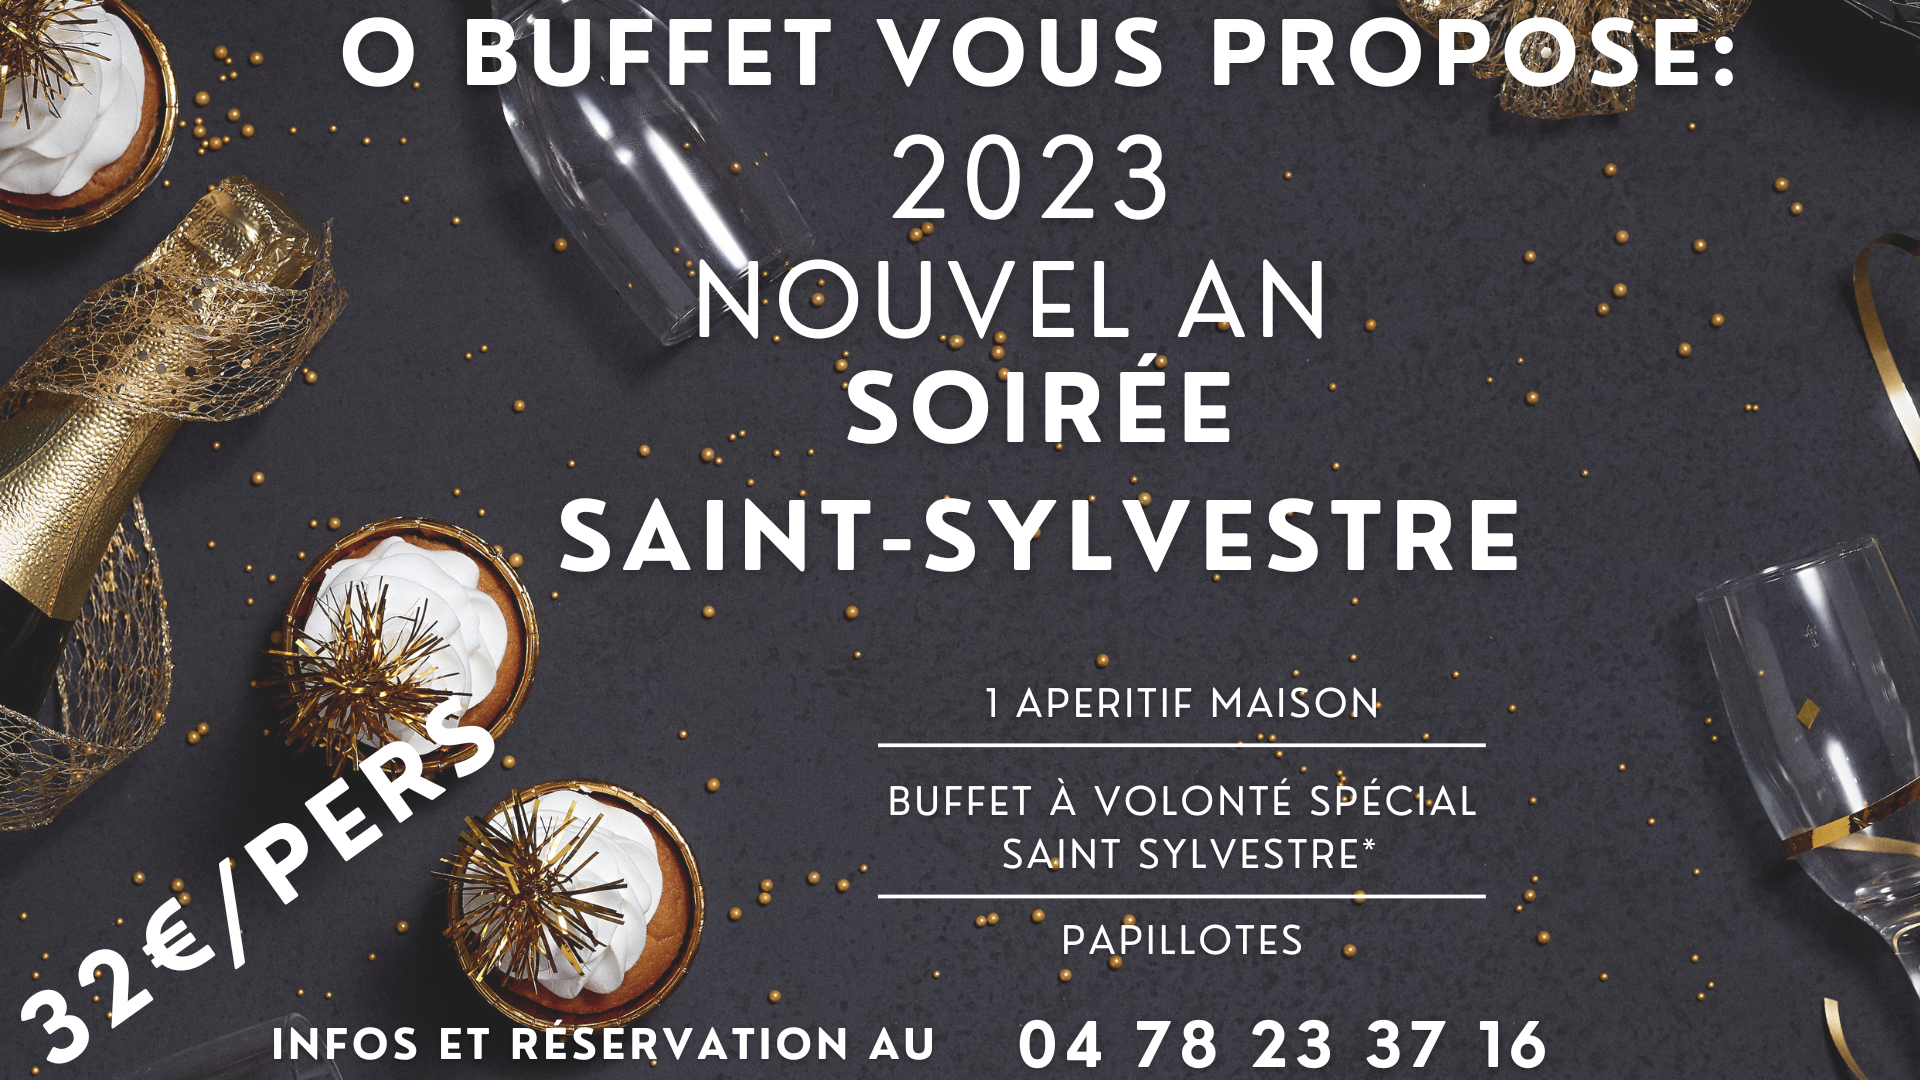 o buffet nouvel an 2023 soiree buffet saint sylvestre